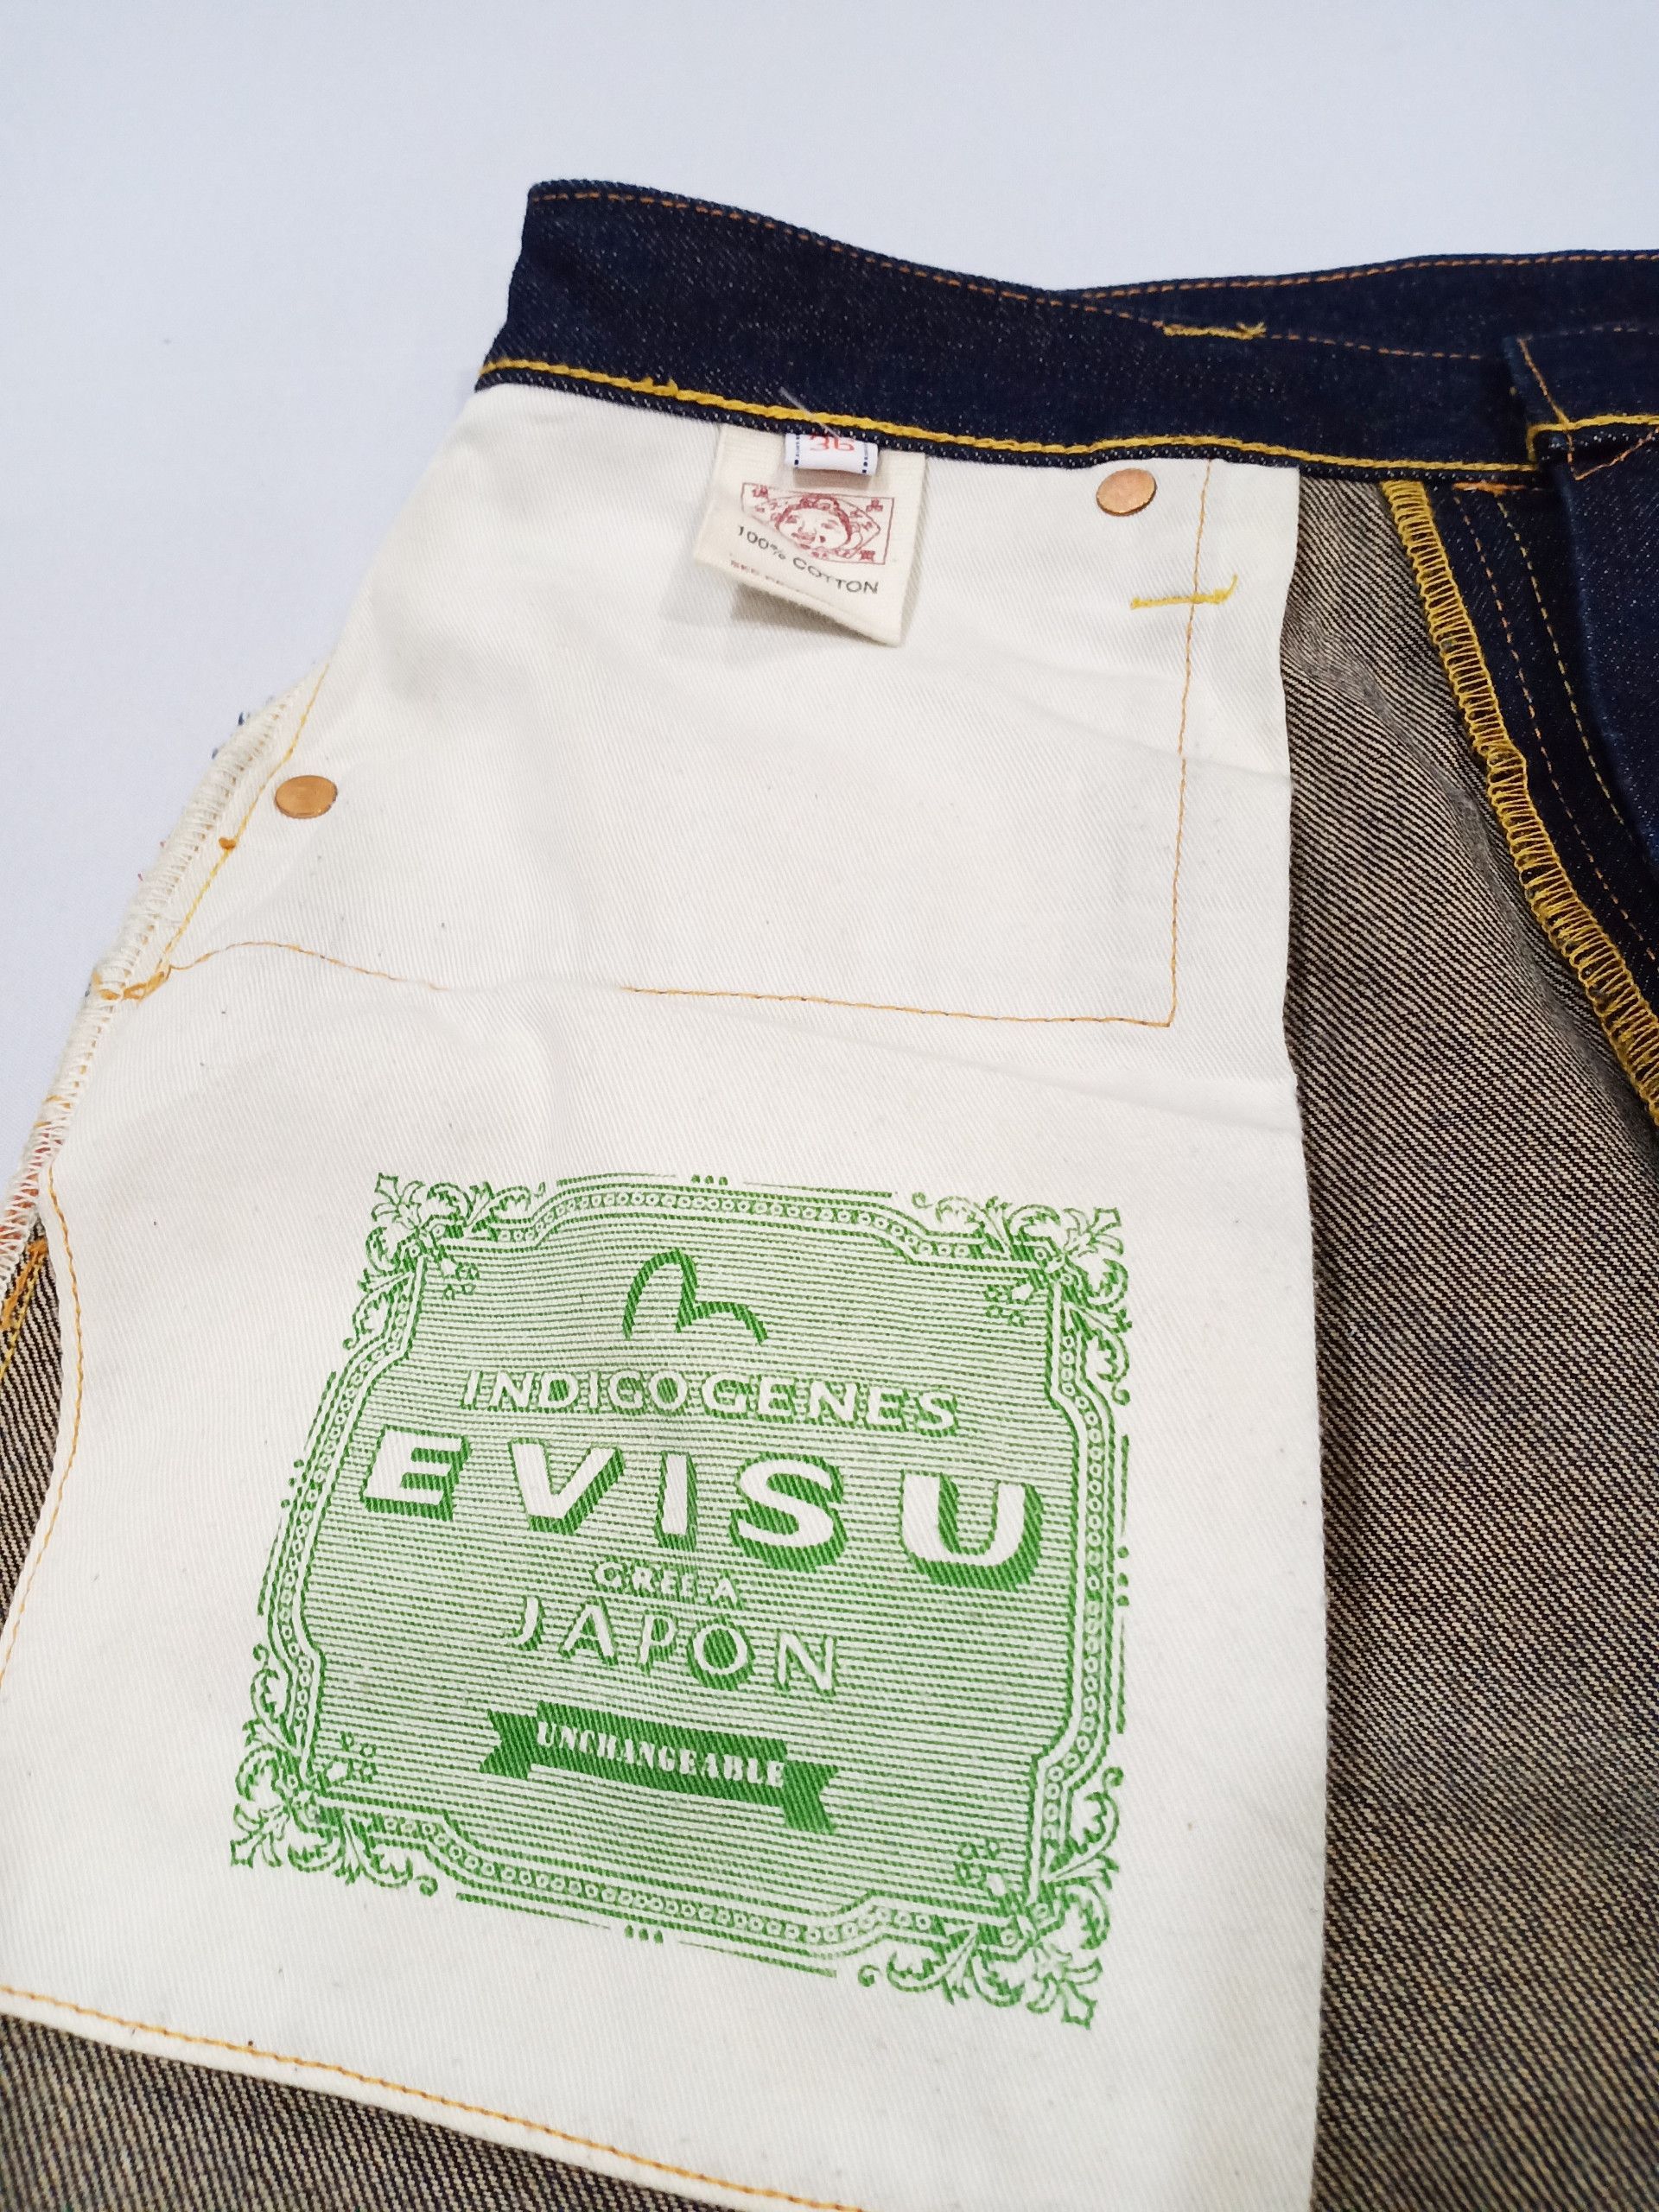 Evisu Evisu Multi Pocket Diacock Selvedge Jeans Size US 36 / EU 52 - 12 Preview